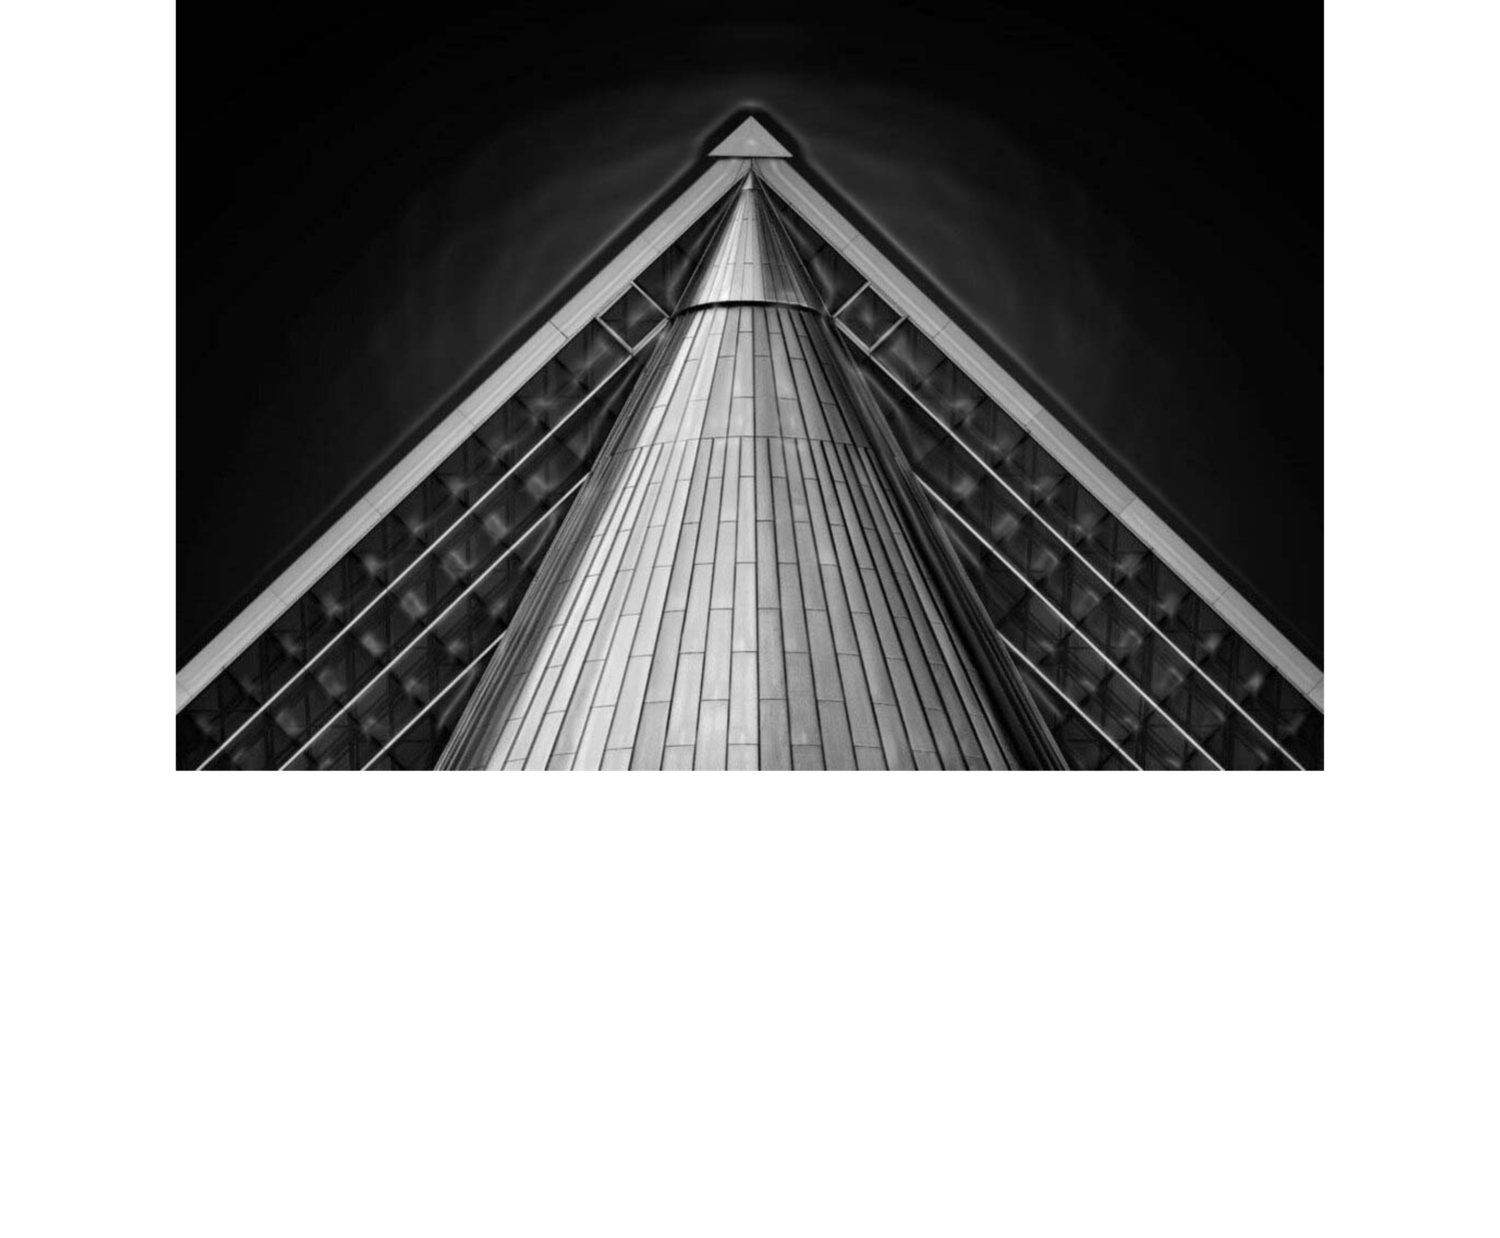 PINETREE STUDIOS